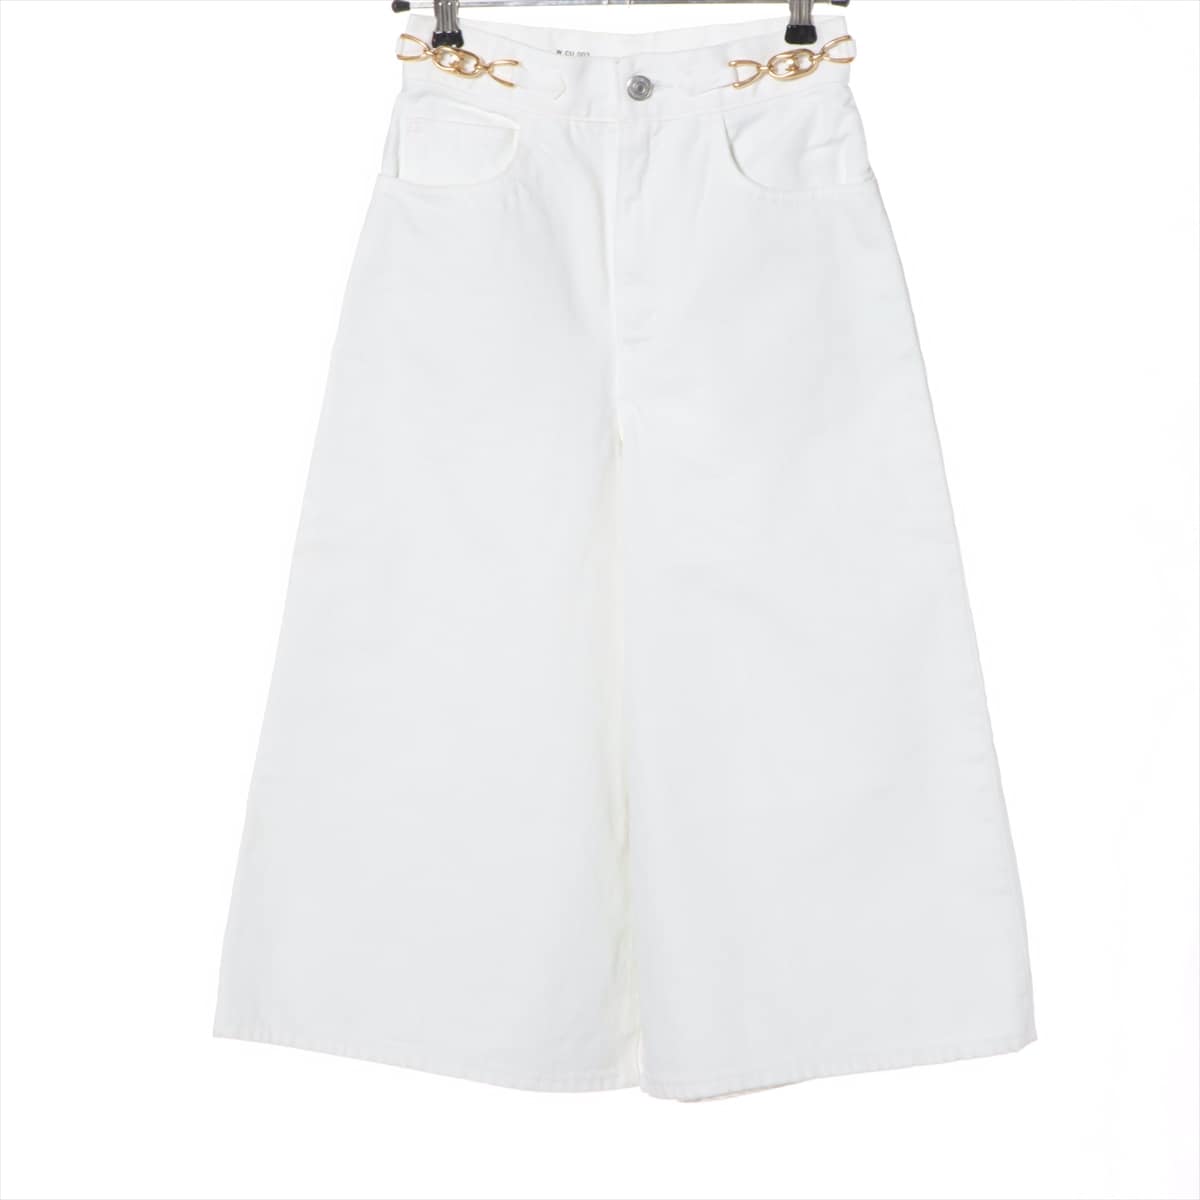 CELINE Triomphe Cotton Denim pants 24 Ladies' White  Shorts culottes